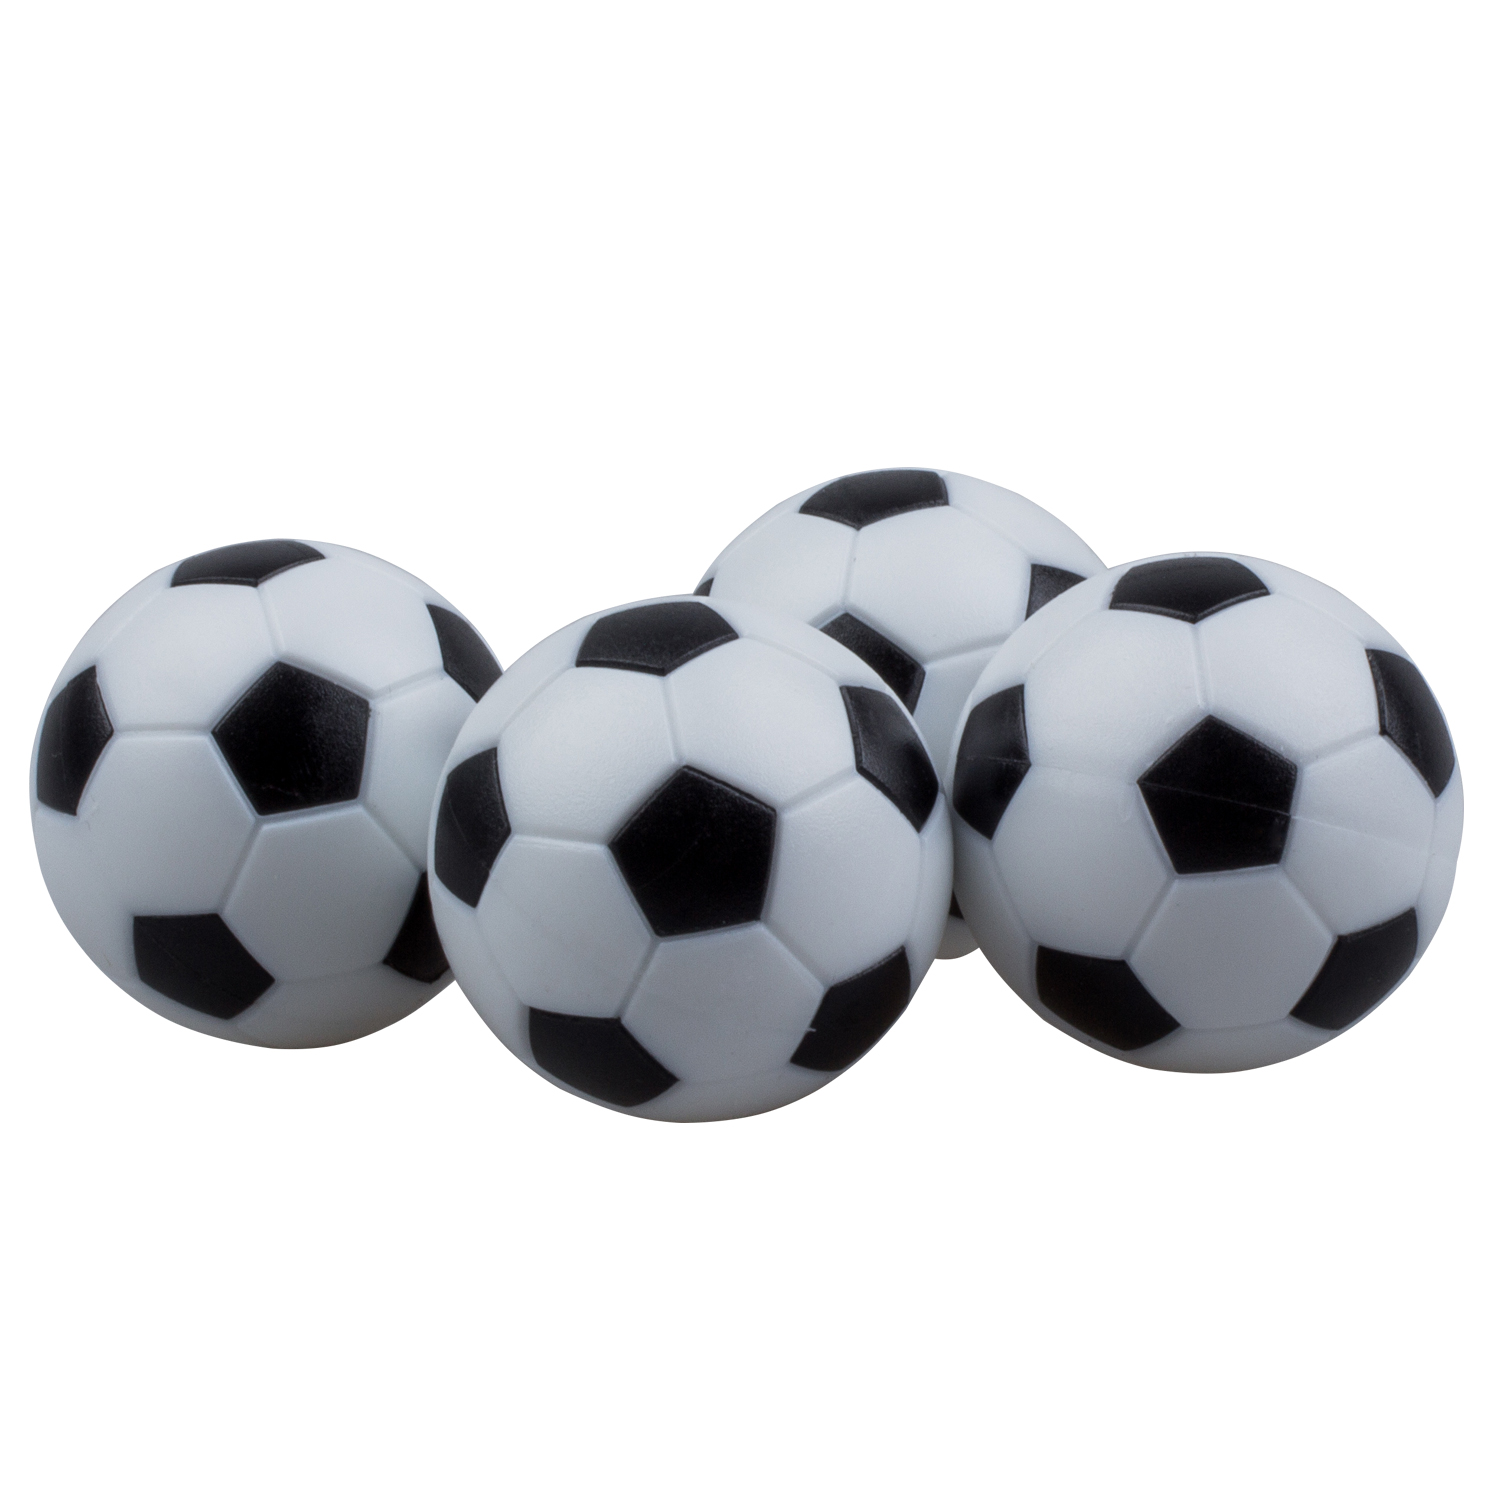 SZ-LGFM-4pcs 32 Mm Plastic Voetbaltafel Tafelvoetbal Bal Voetbal Fussball